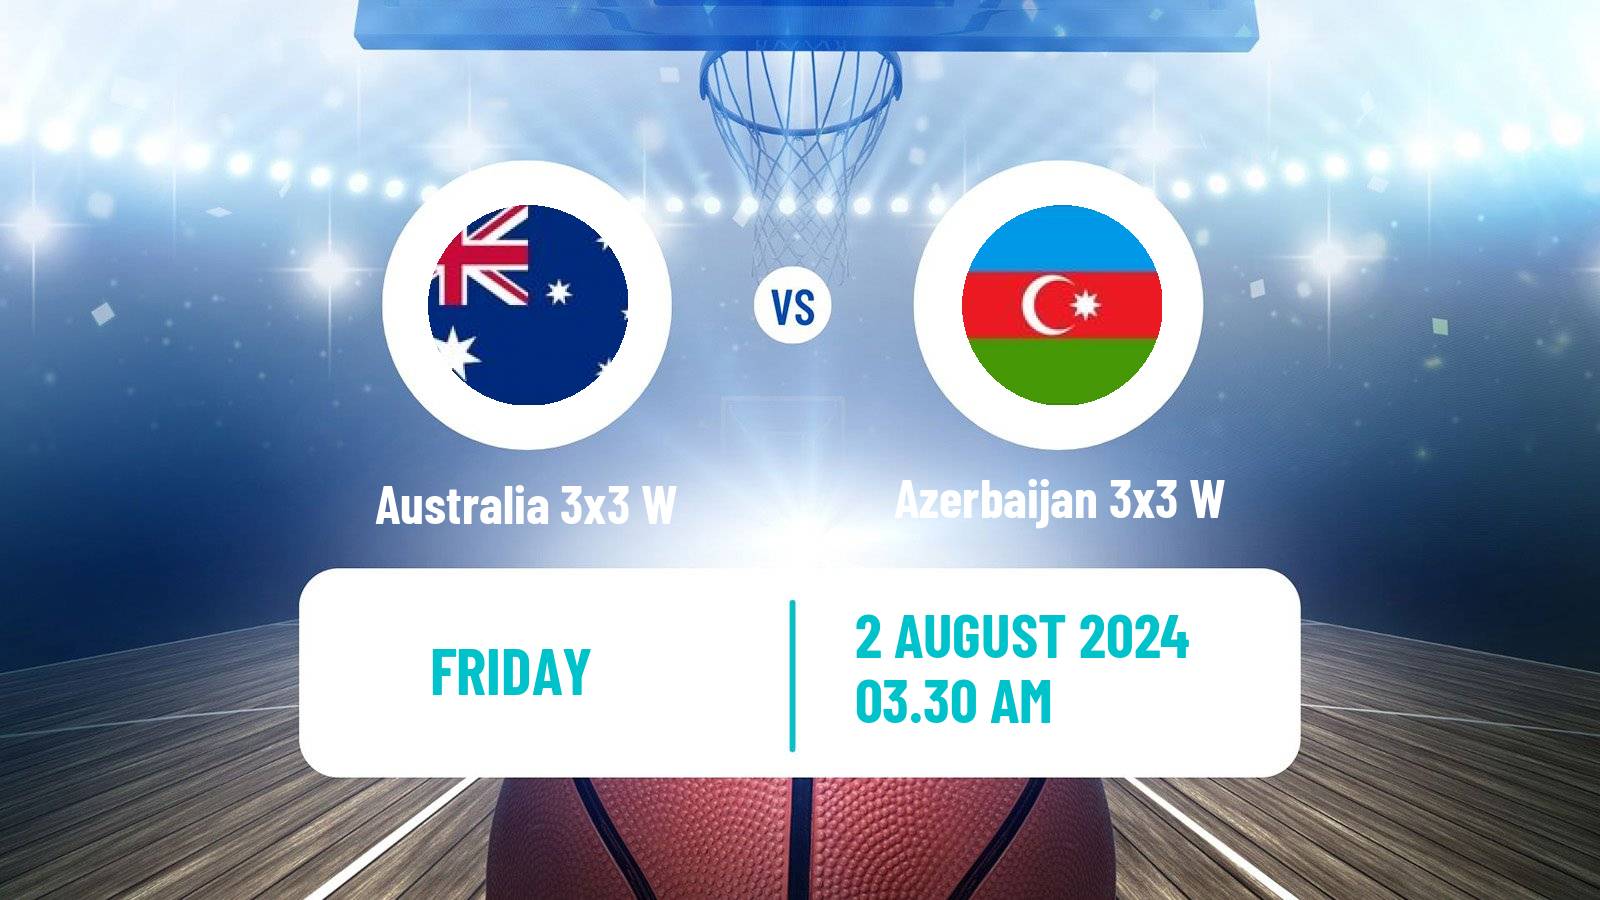 Basketball Olympic Games Basketball 3x3 Women Australia 3x3 W - Azerbaijan 3x3 W